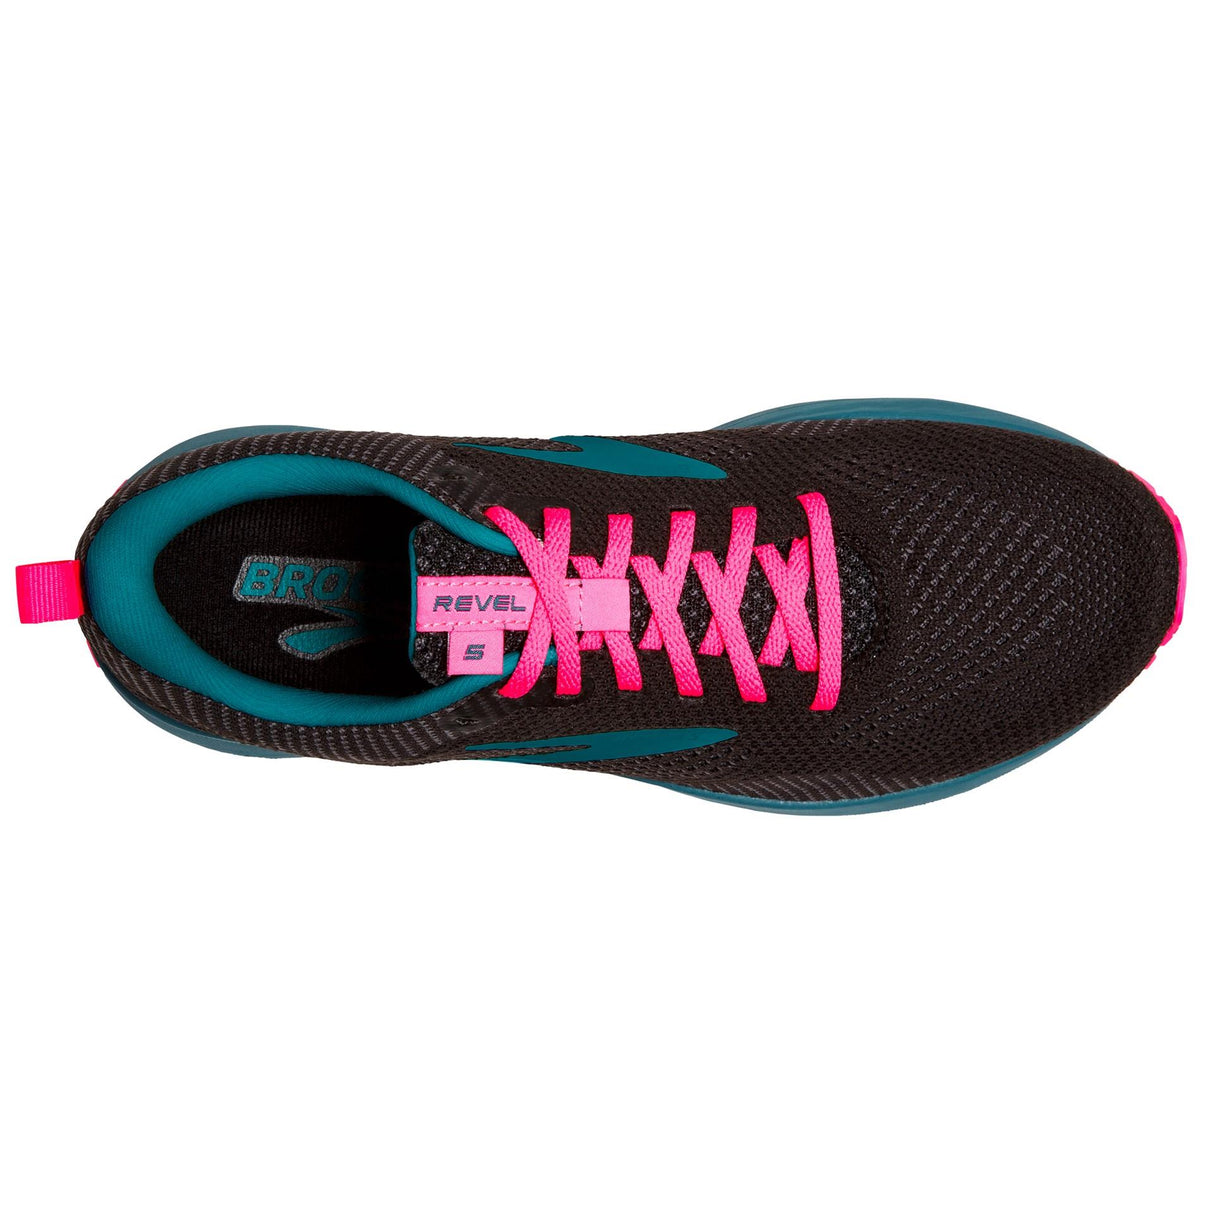 Brooks Revel 5 - Womens Running Shoe